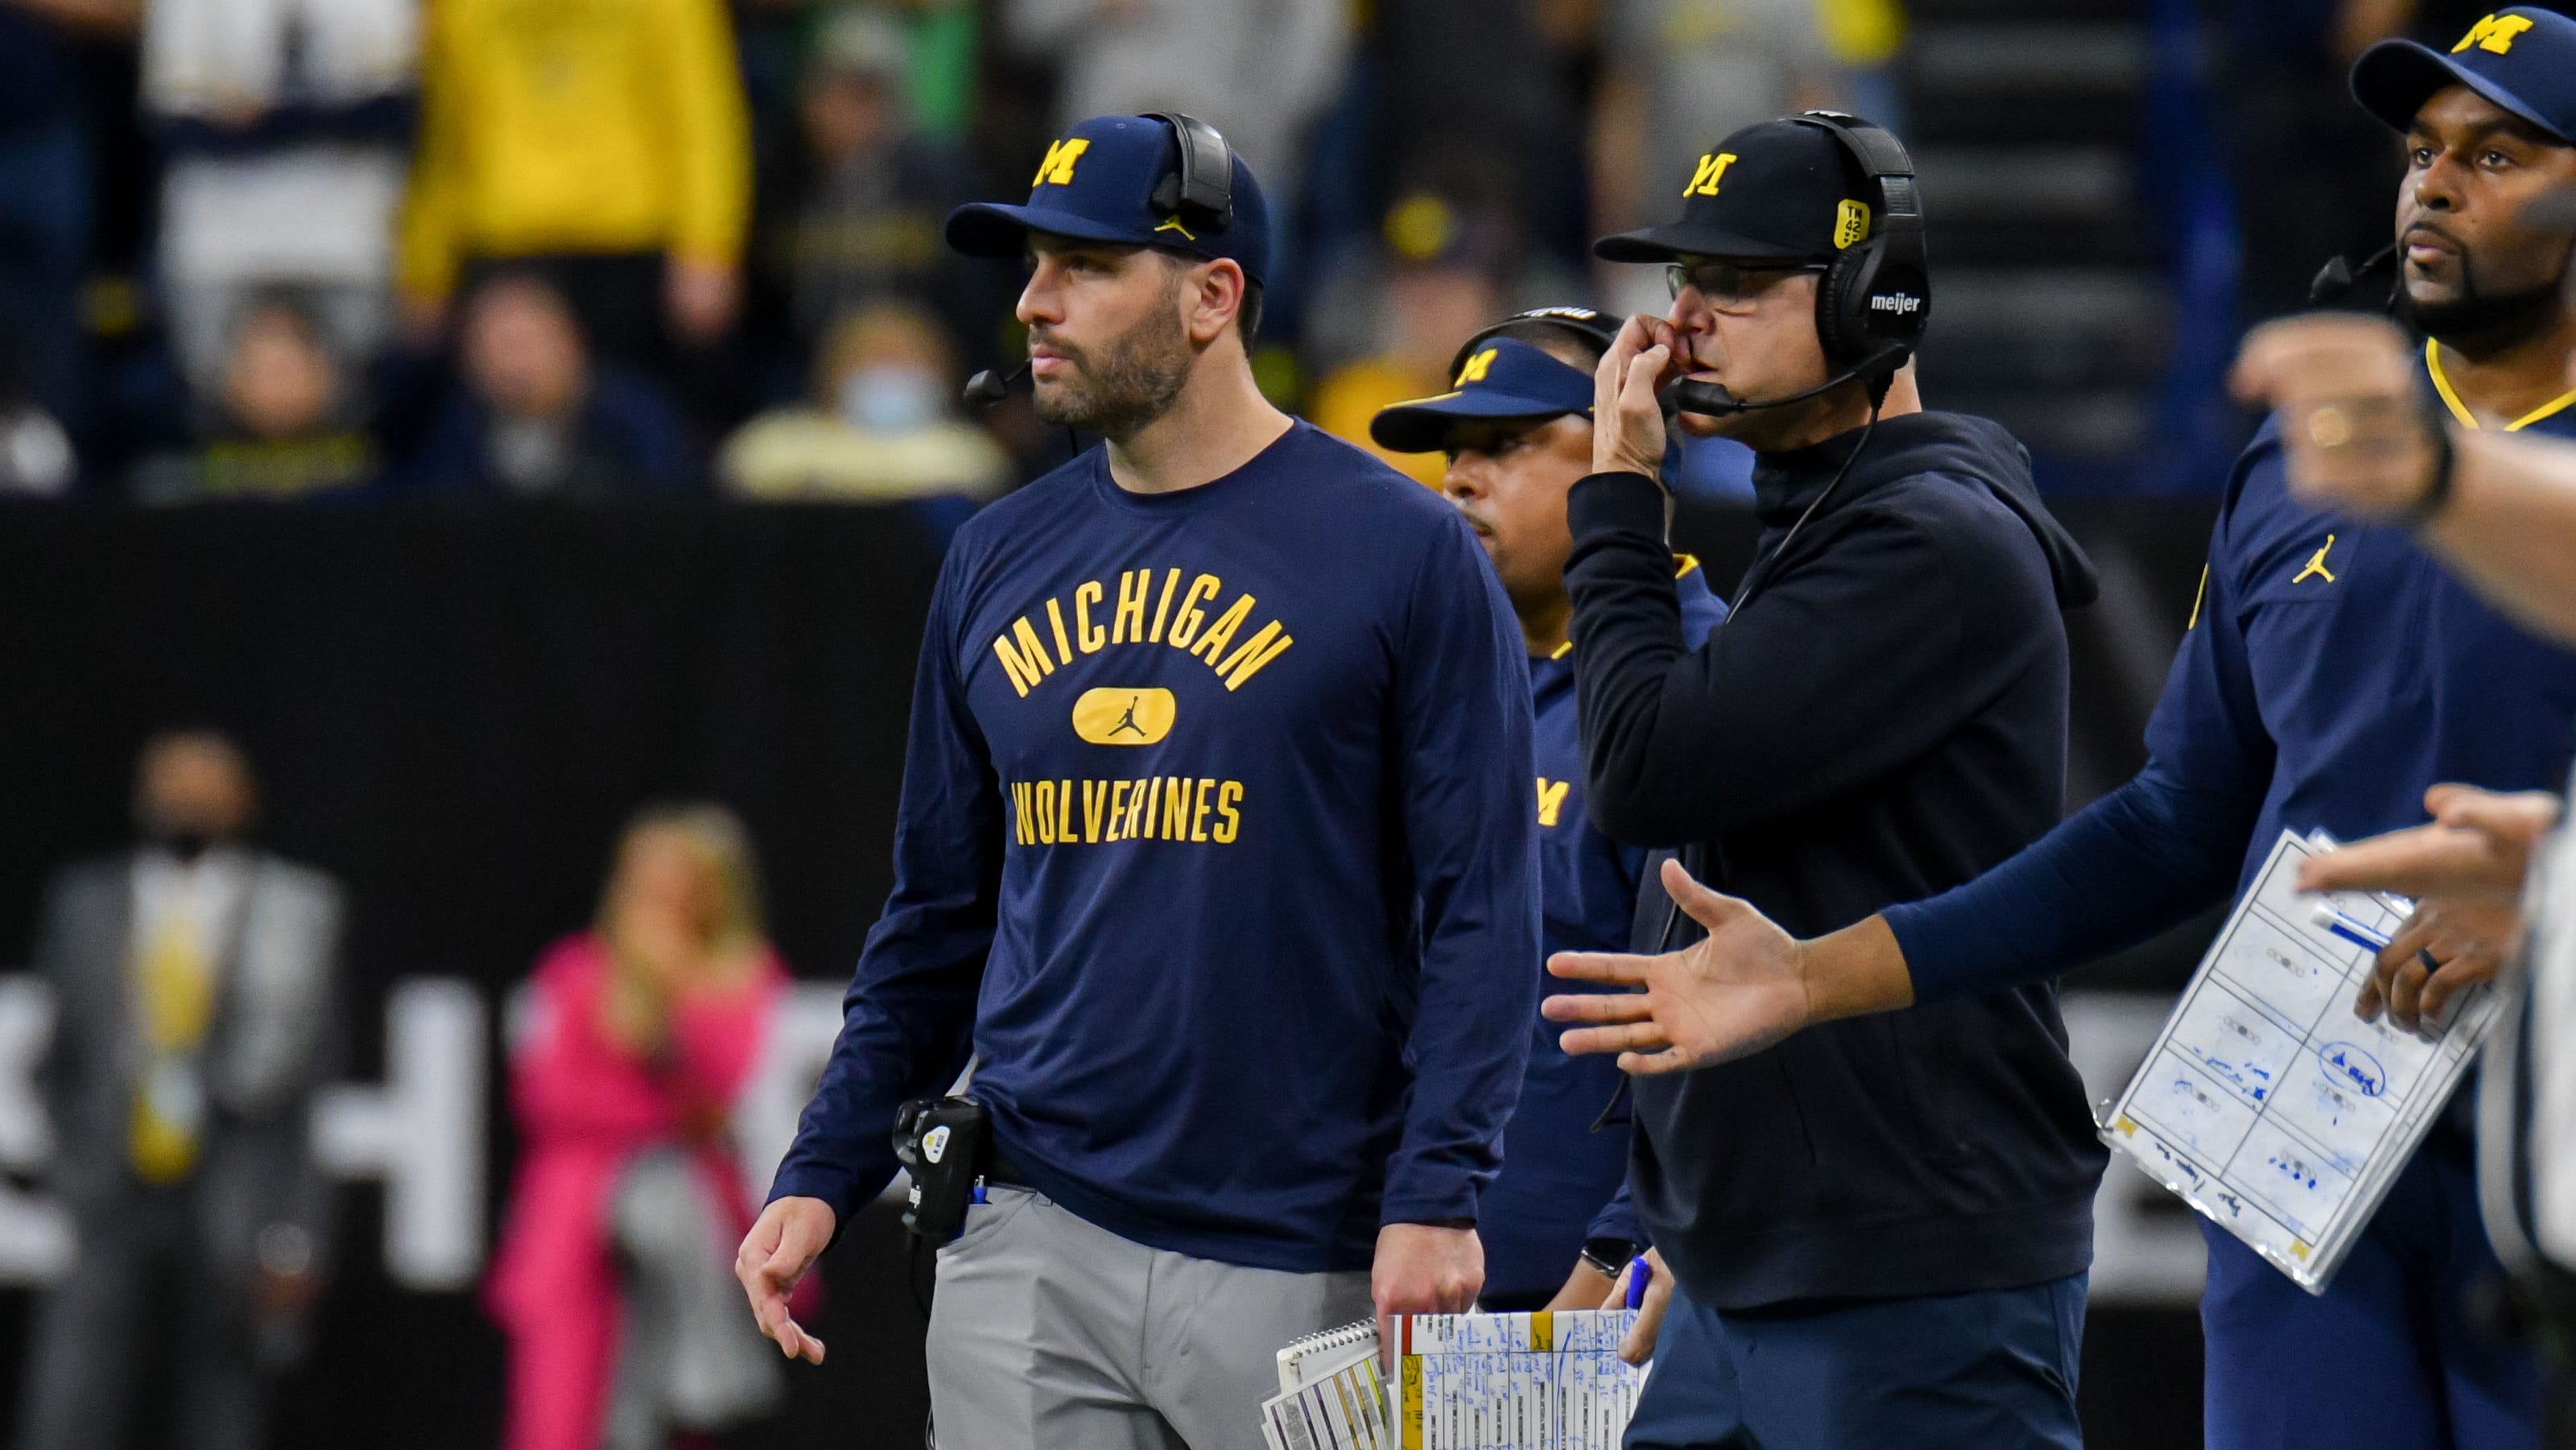 Michigan fires co-offensive coordinator Matt Weiss